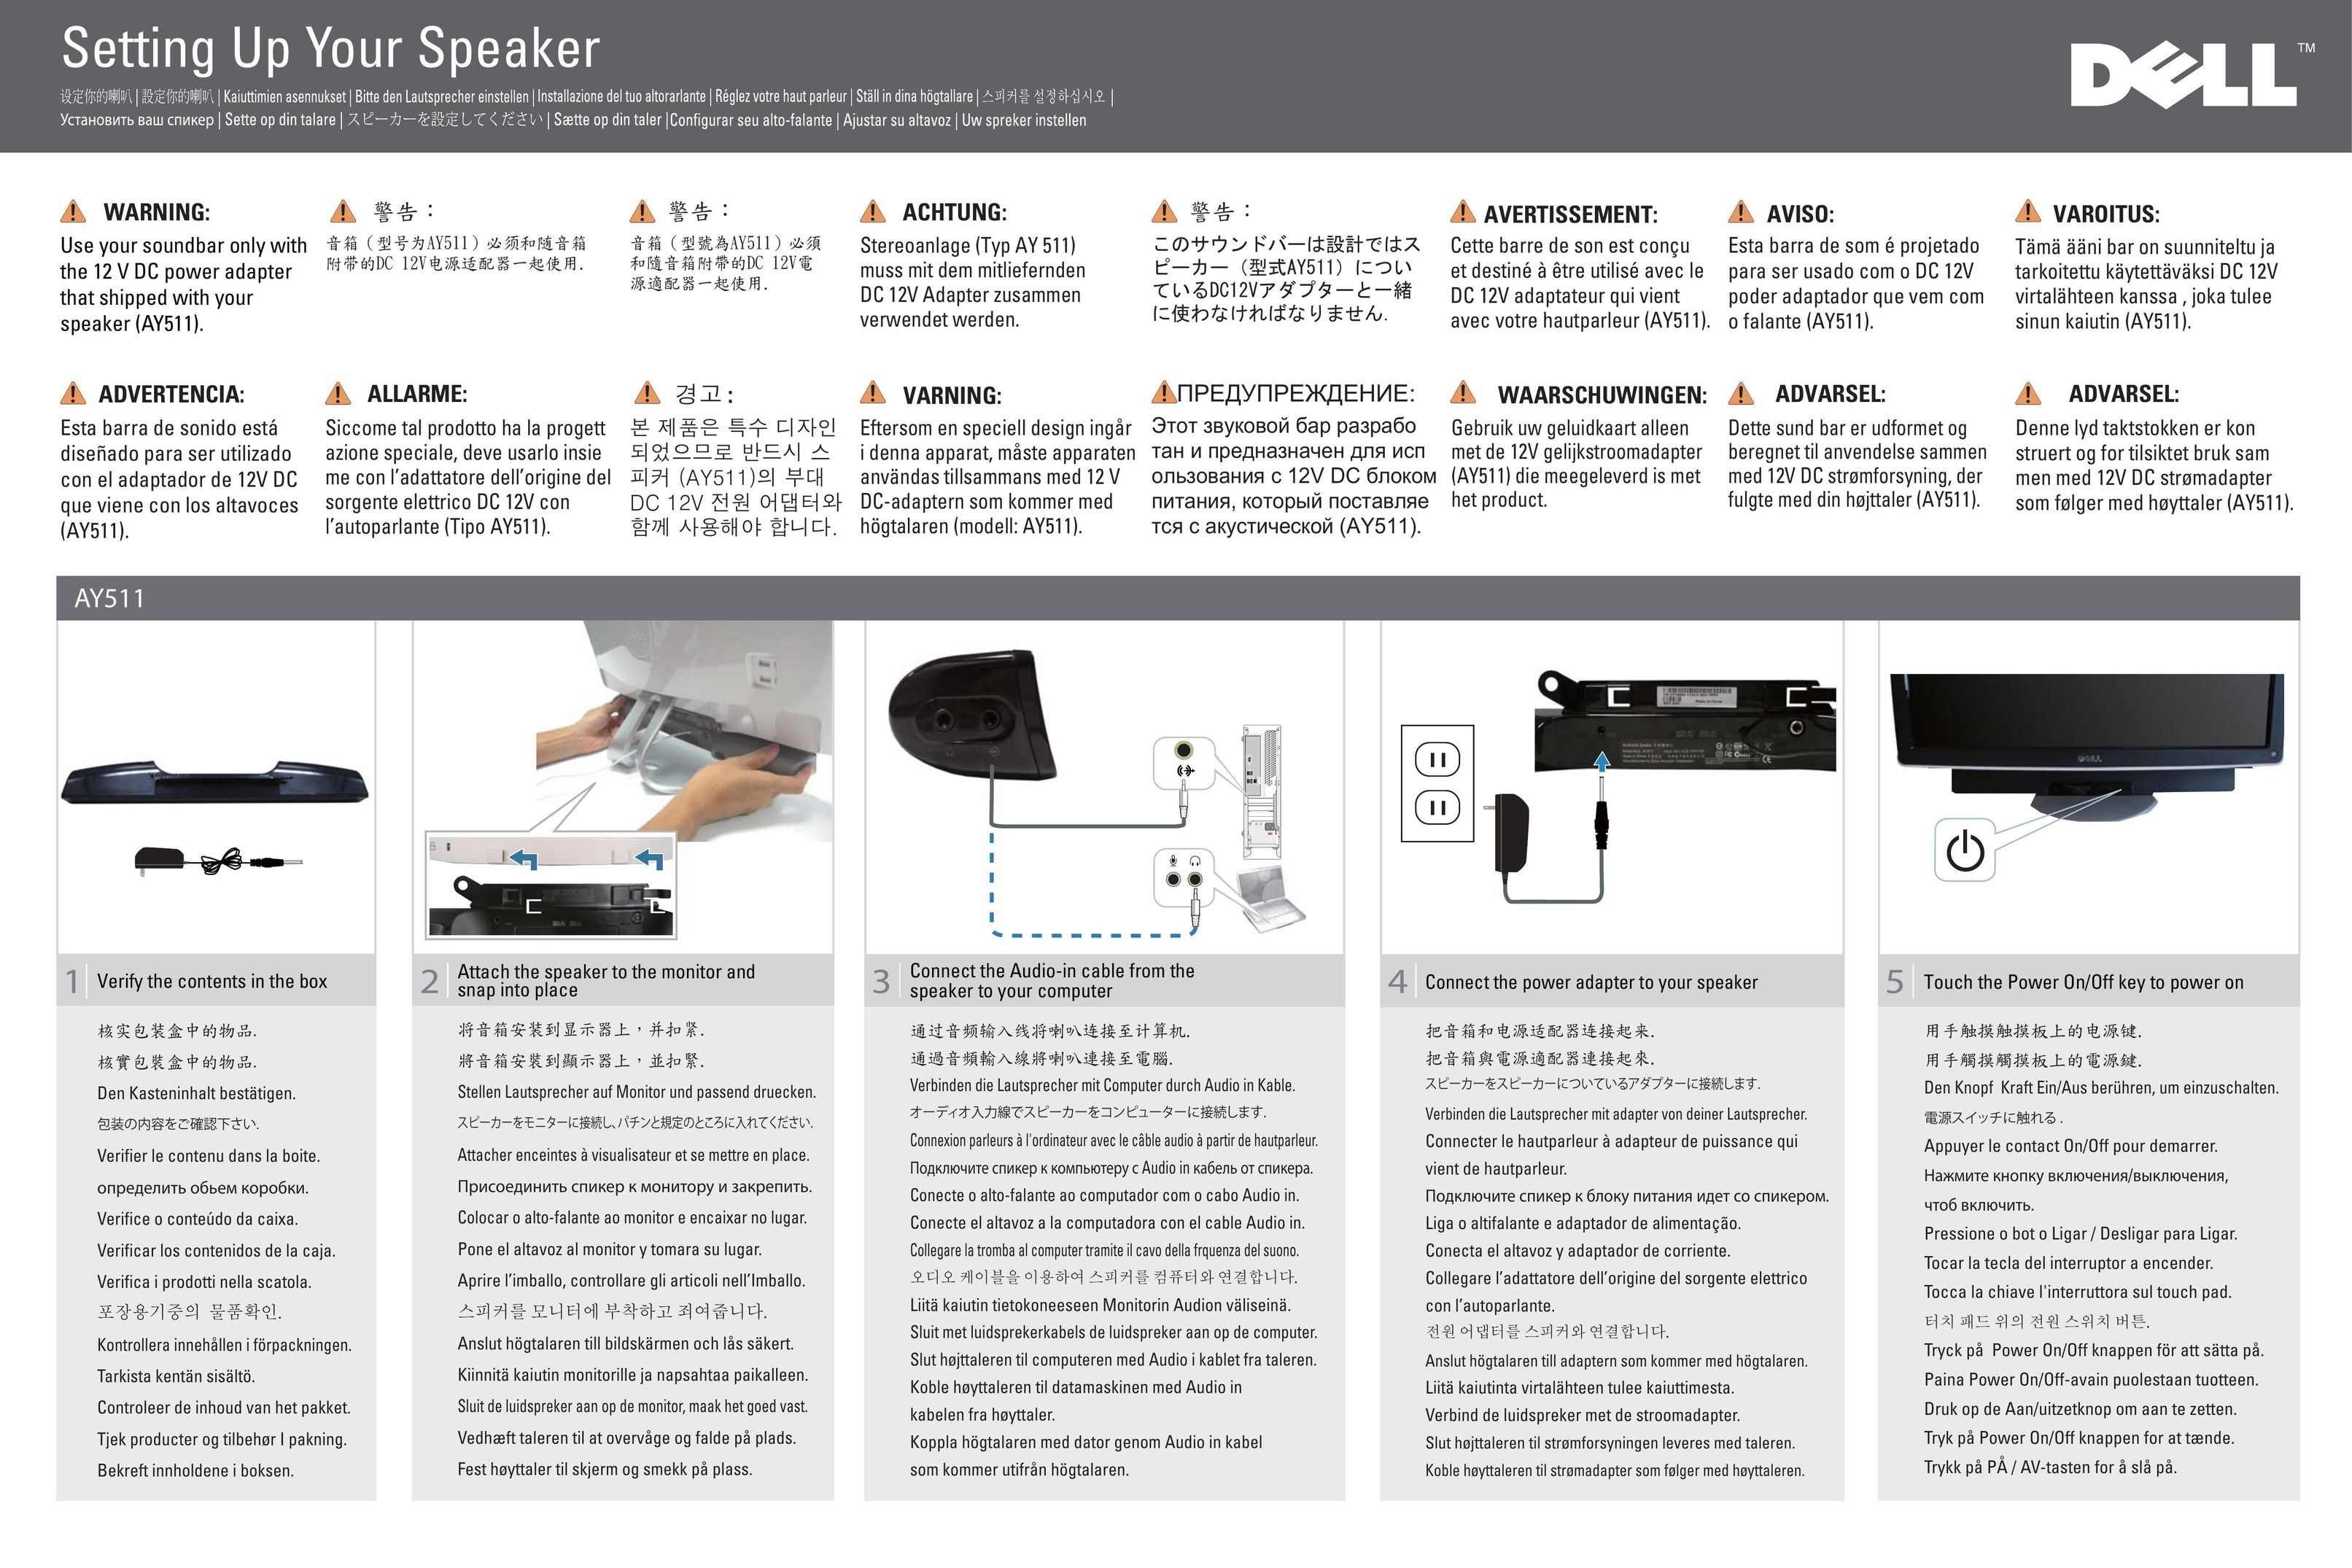 Dell AY511 Speaker User Manual